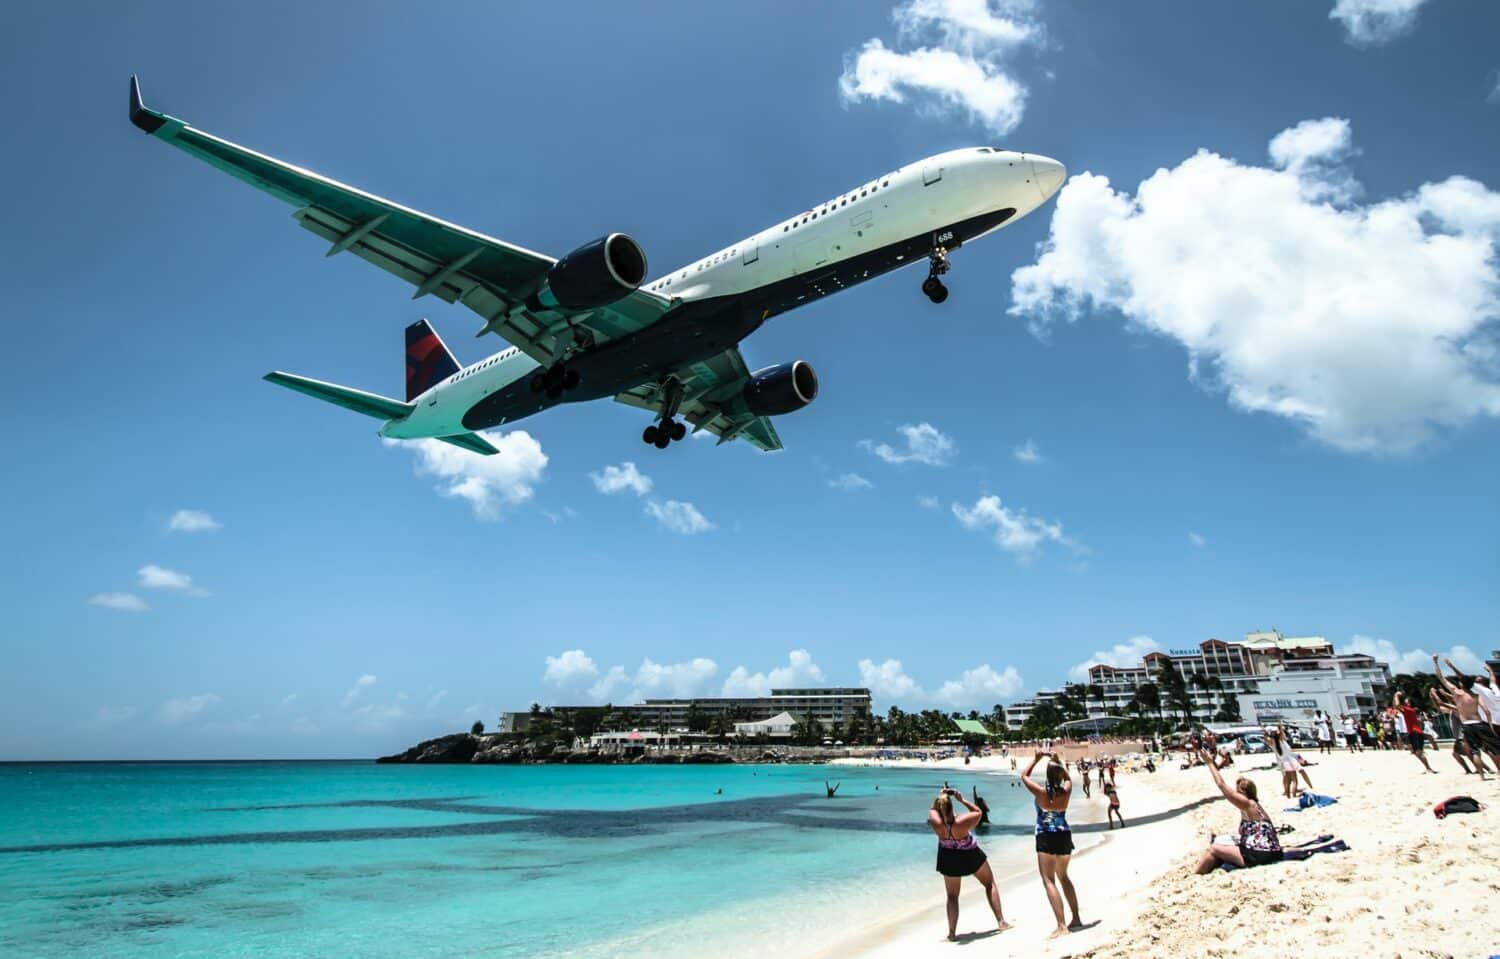 Um avião sobrevoando a praia Maho em St Maarten, o mar é de um verde claro, a areia é branca e alguns turistas estão parados fotografando o avião